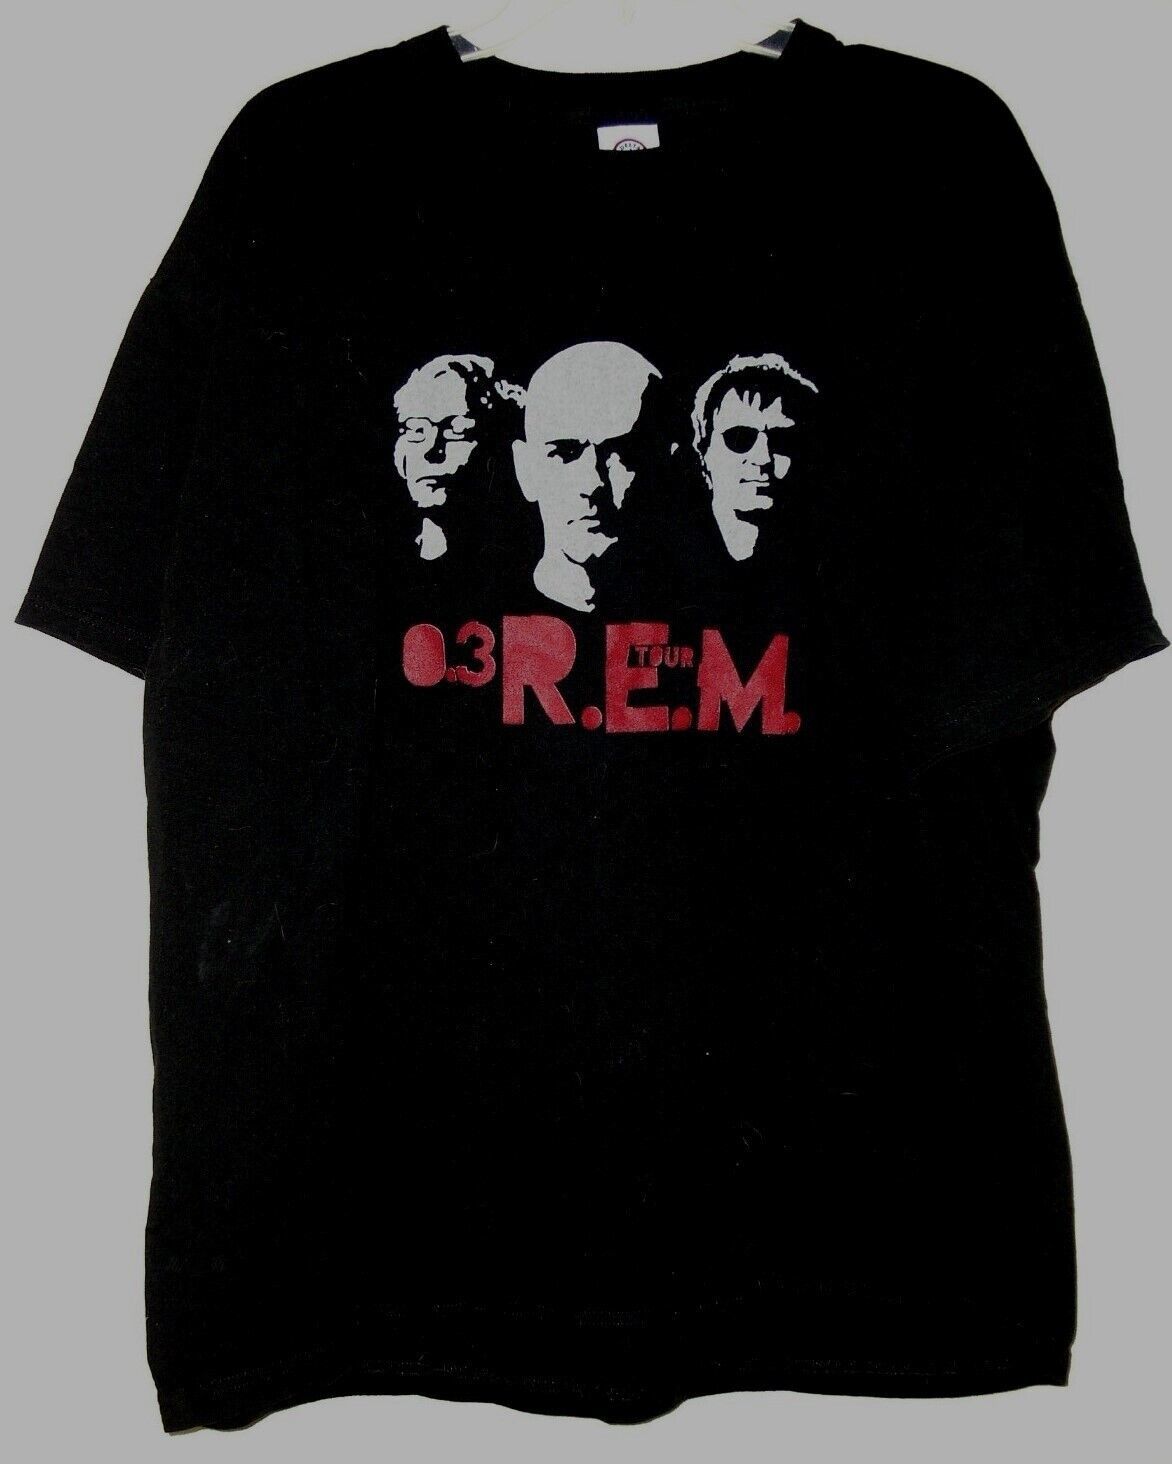 Primary image for R.E.M. Concert Tour T Shirt Vintage 2003 03 R.E.M Size X-Large